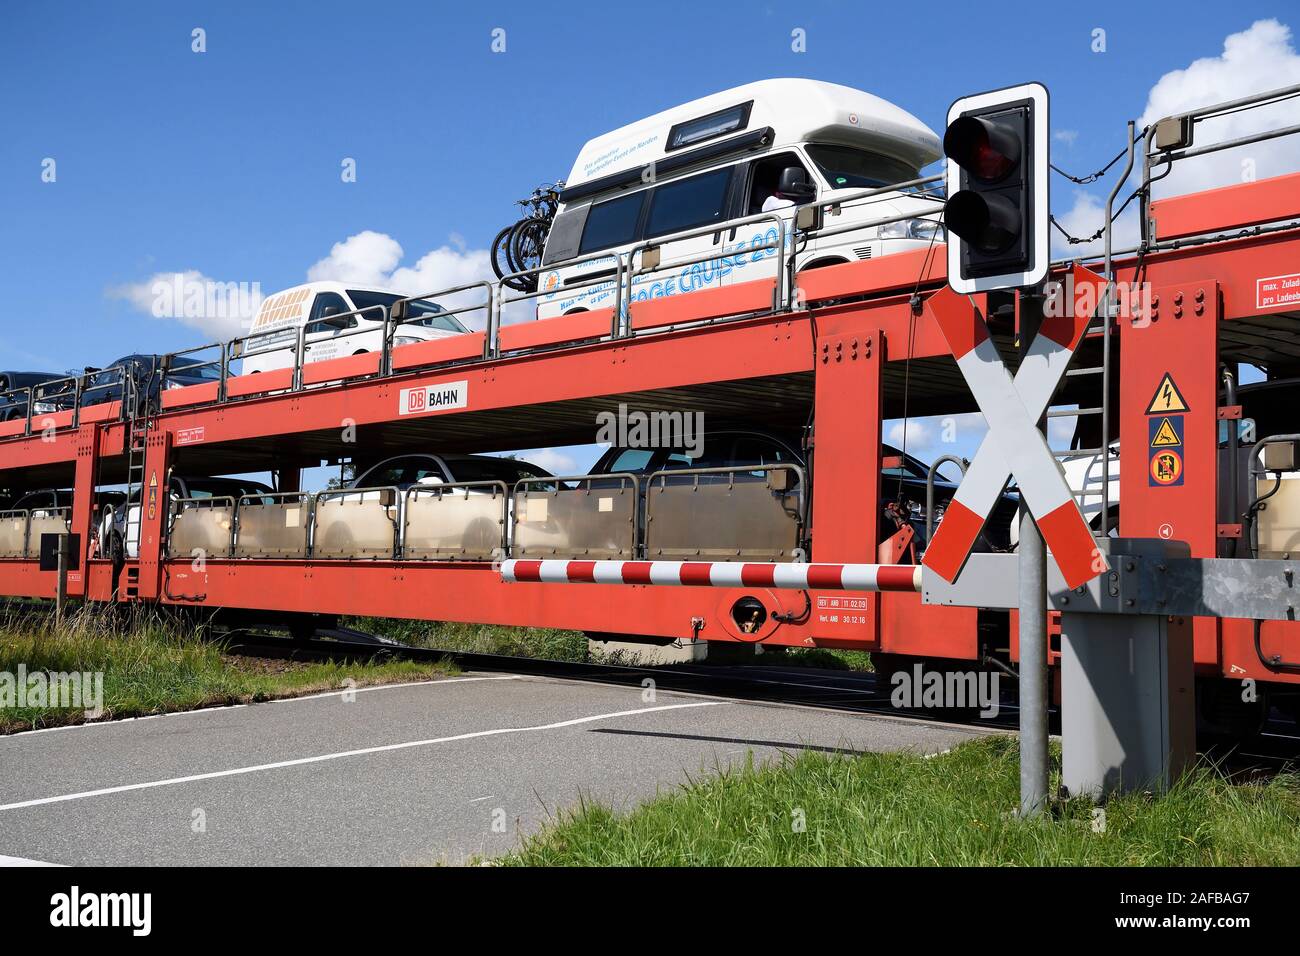 Autozug, Sylt Shuttle, Verbindung der Insel Sylt mit dem Festland, Sylt, nordfriesische Inseln, Nordfriesland, Schleswig-Holstein, Allemagne Banque D'Images